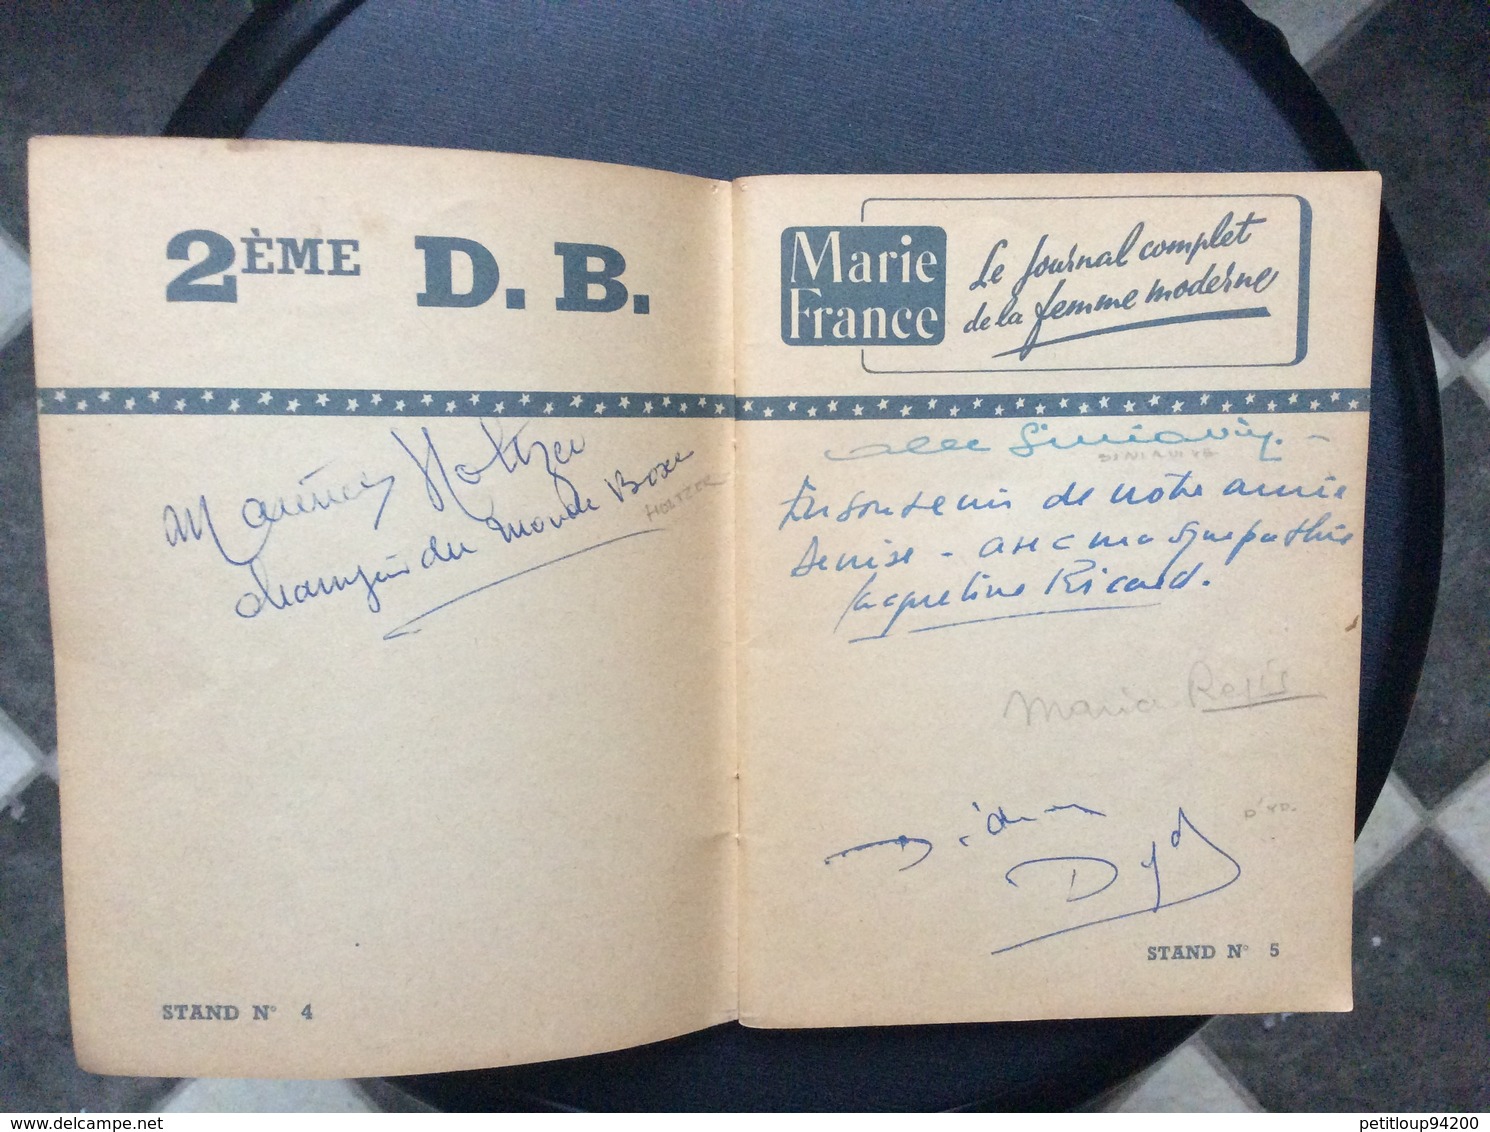 LA KERMESSE AUX ETOILRE 1951Carnet d’Autographes E.VON STROHEIM J.MARAIS S.MONTFORT N.COURCEL D.GELIN M.MICHEL Etc....